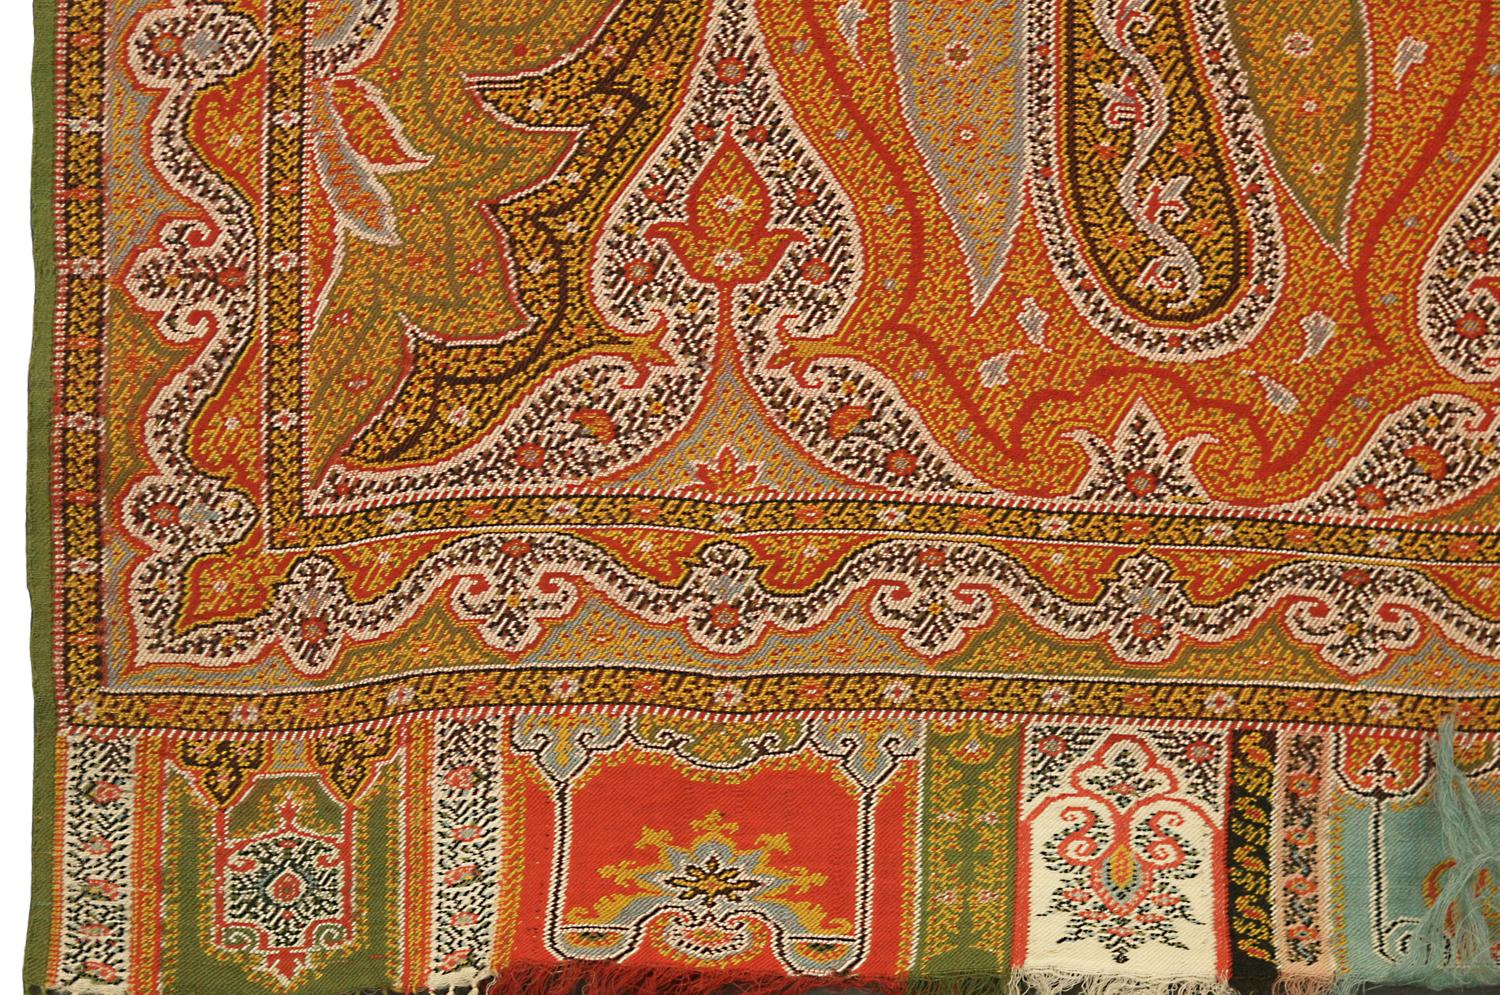 Dies ist ein extragroßes antikes indisches Kaschmir-Textil, das Ende des 19. Jahrhunderts um 1900 gewebt wurde und 310 x 162 cm groß ist. In diesem Stück kommt das berühmte Paisley-Motiv, das an beiden Enden und in der gesamten Hauptbordüre extra